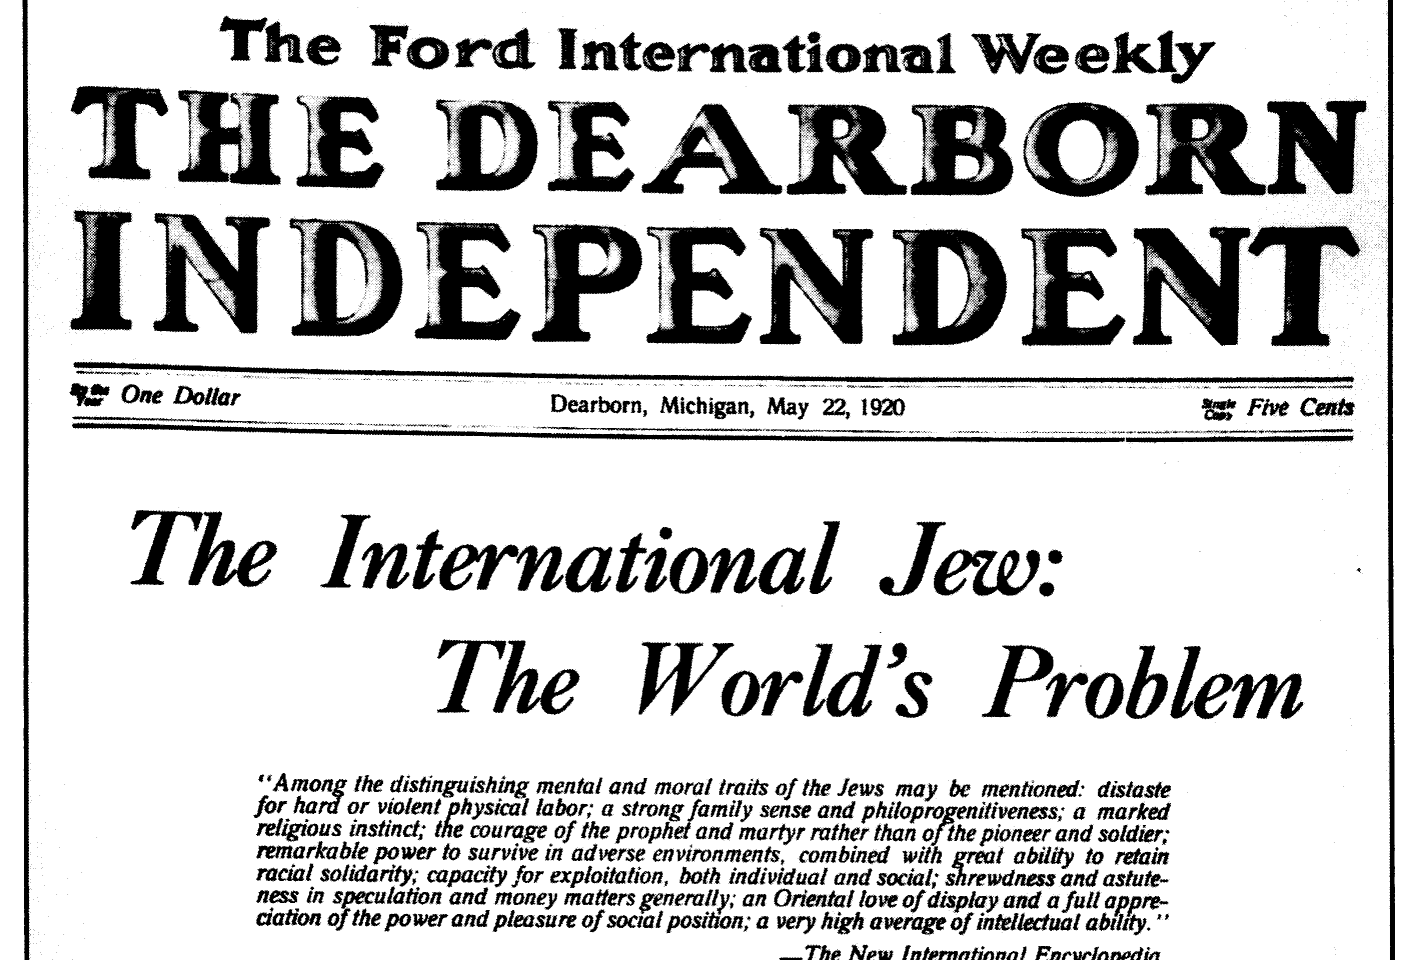 Le Juif international : le problème du monde selon le journal de Ford